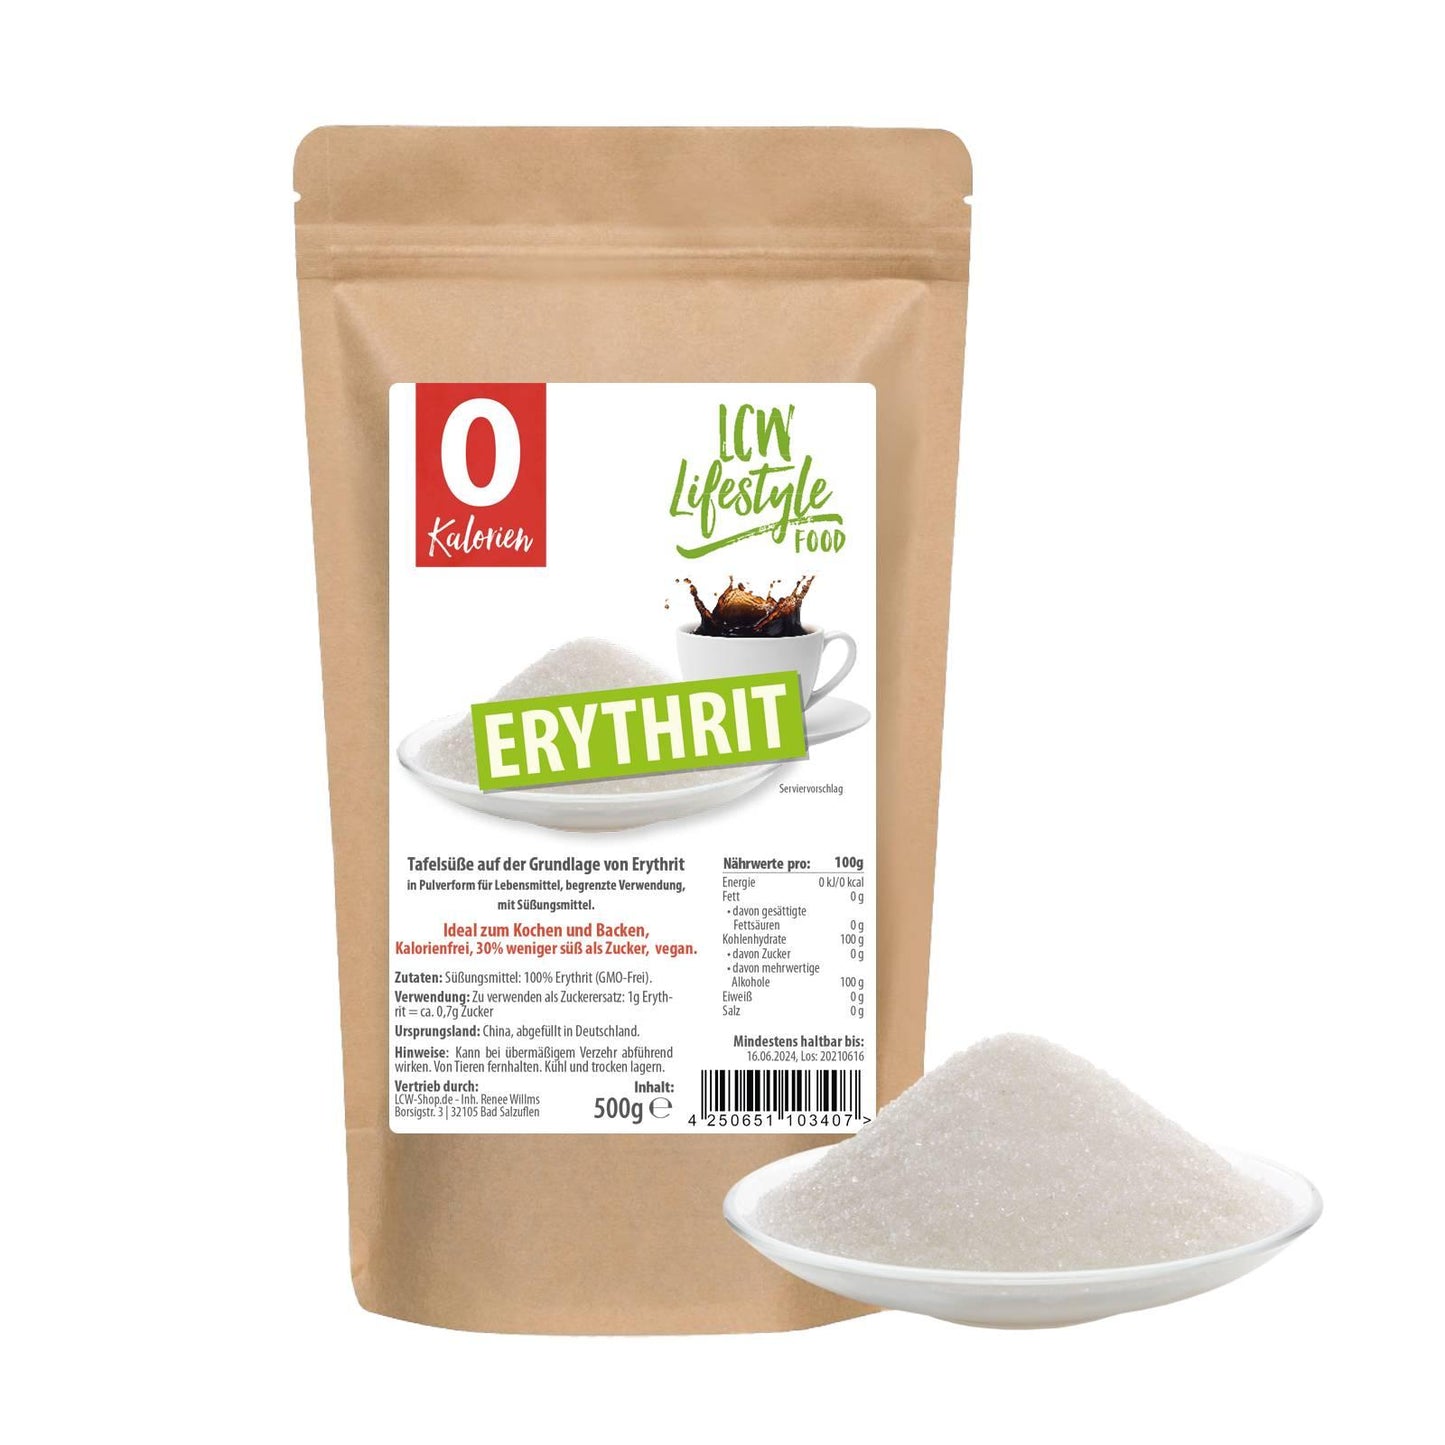 Erythrit kalorienfreier Zuckerersatz 500g Beutel von LCW